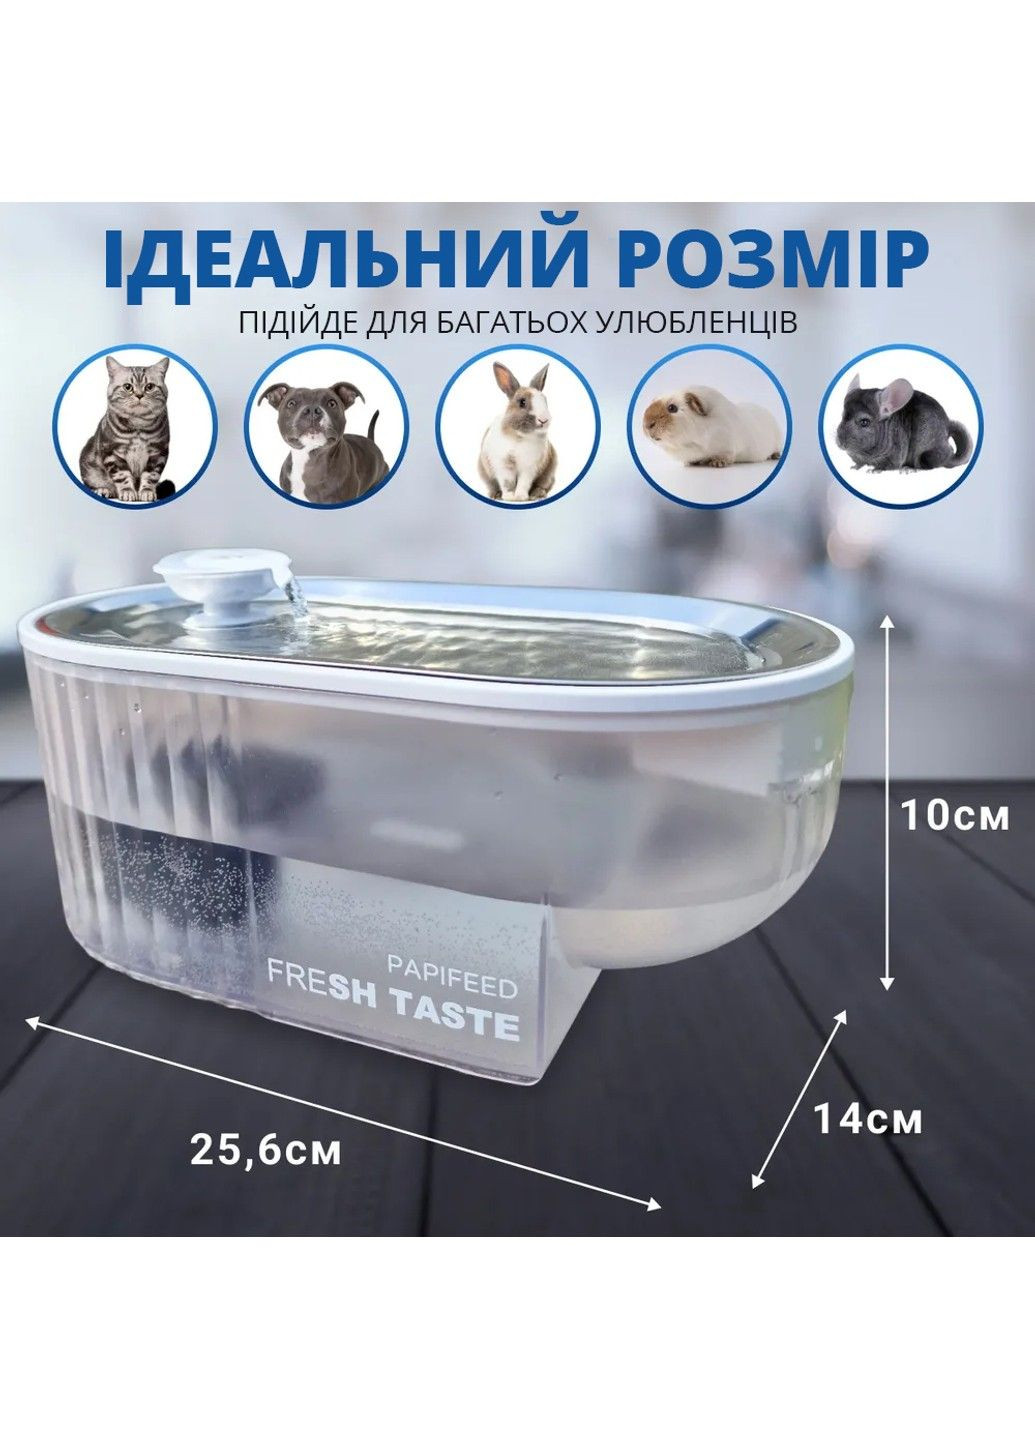 Автоматическая поилка фонтан для собак и кошек 2.5л PAPIFEED (290049511)